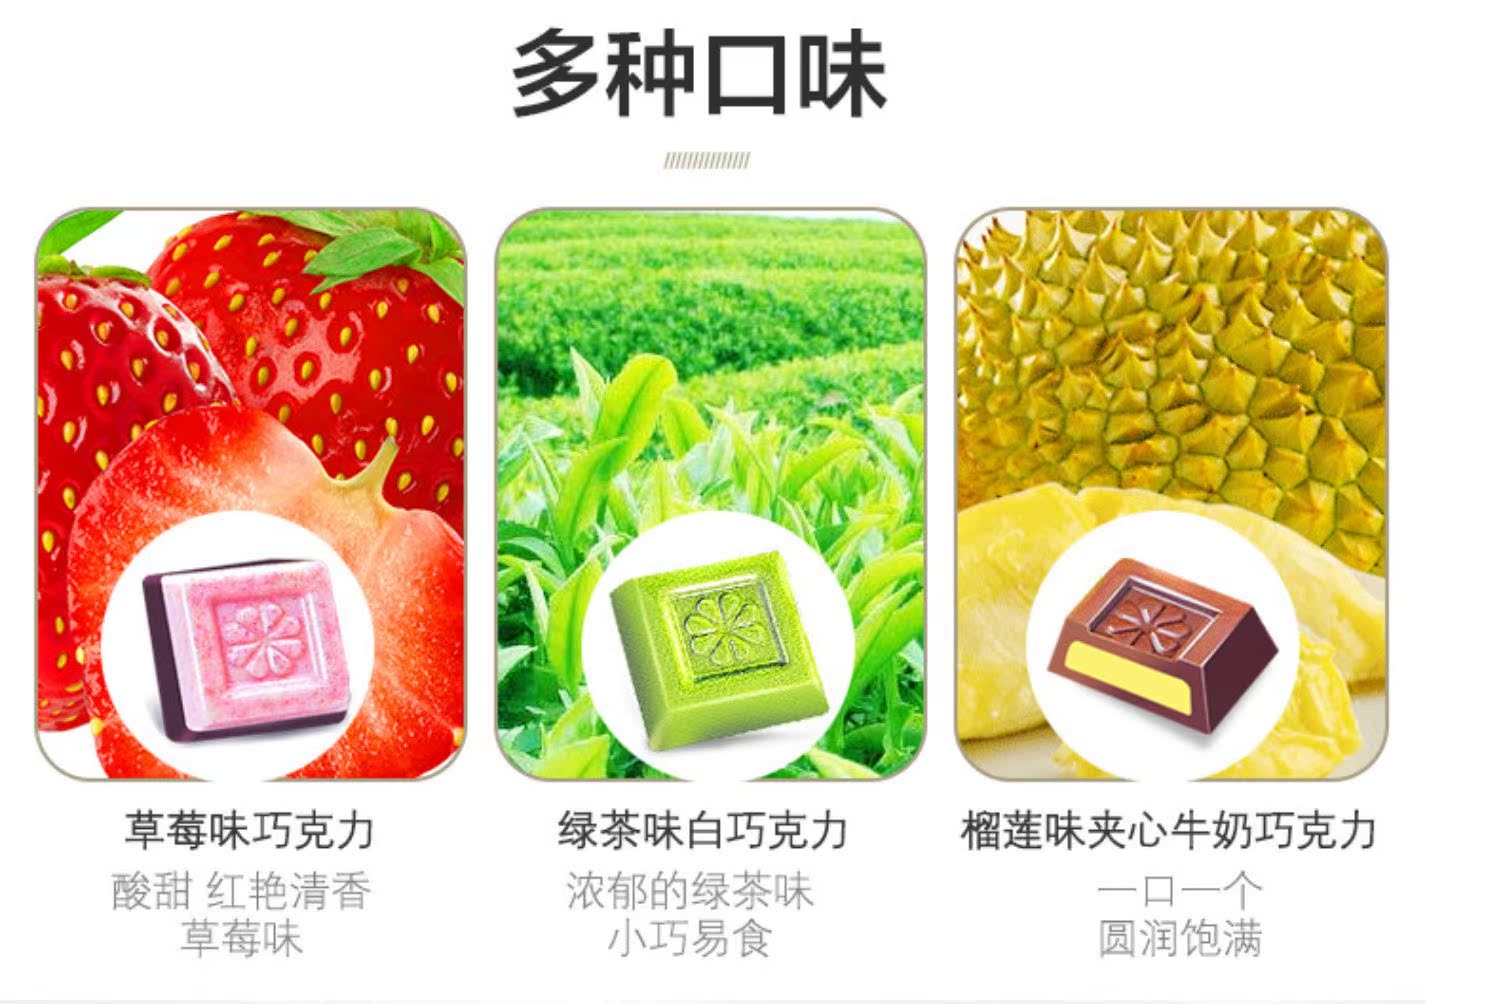 马来西亚倍乐思绿茶草莓味夹心巧克力礼盒